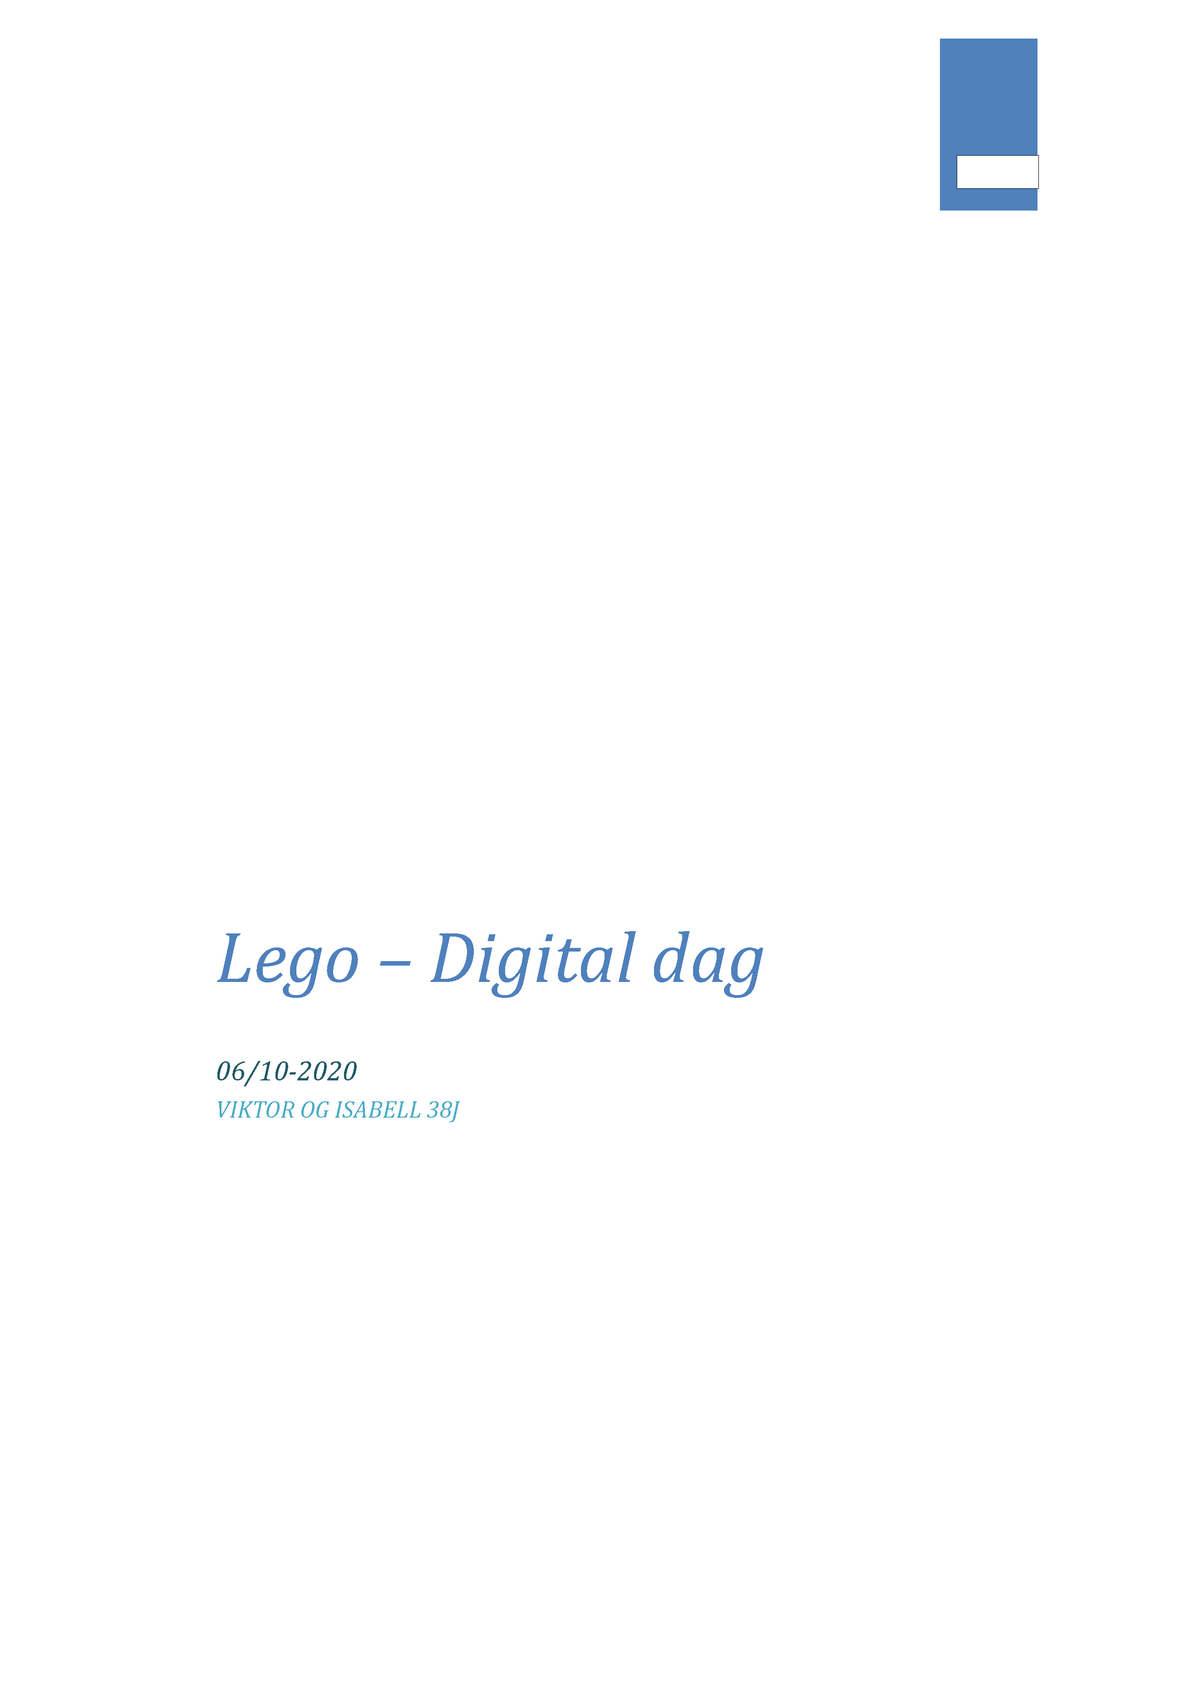 Lego - digital dag 2 - Lego – Digital dag 06/10- VIKTOR ISABELL Indholdsfortegnelse COMPANY